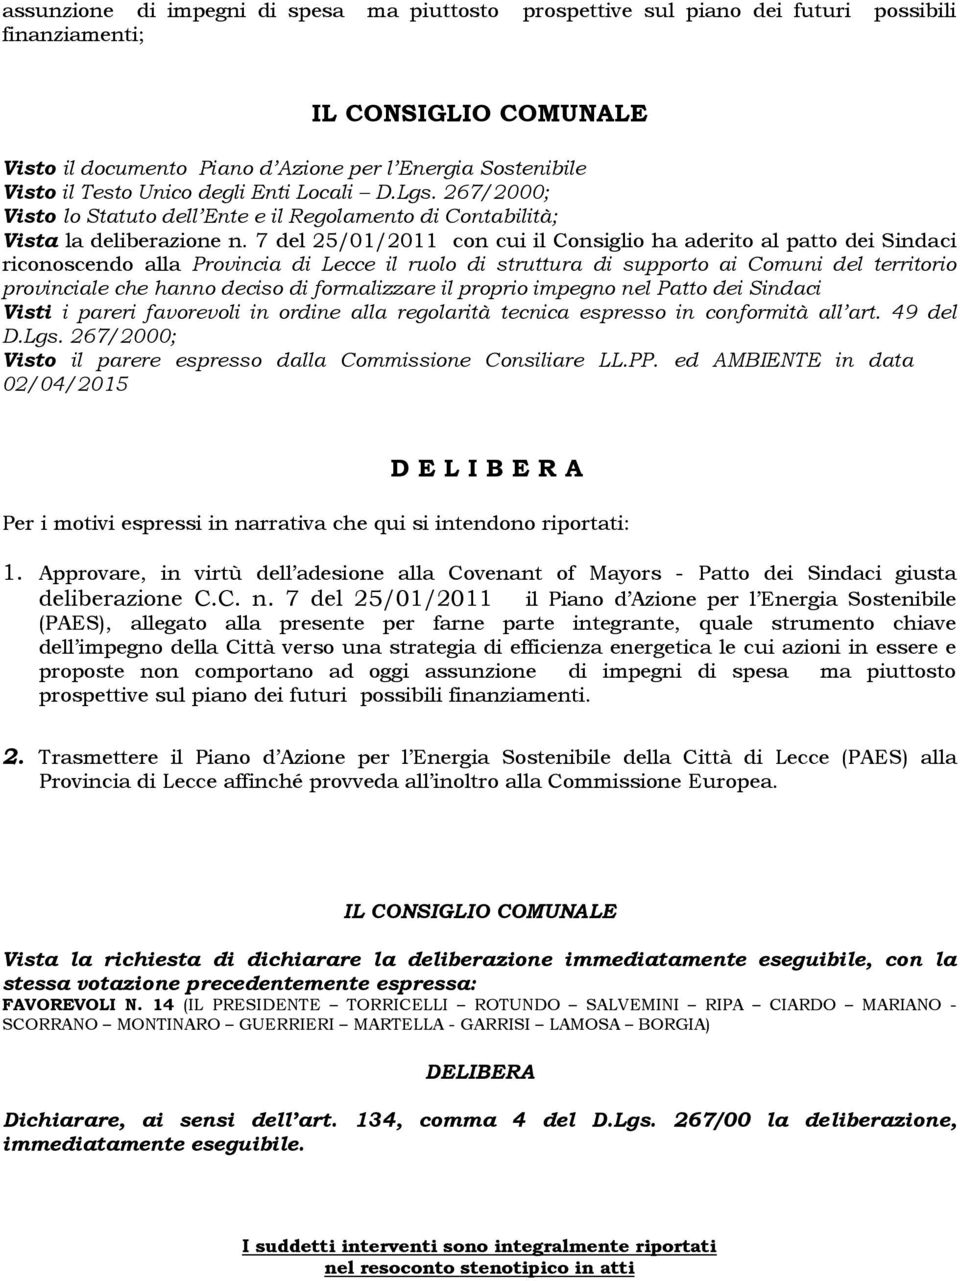 7 del 25/01/2011 con cui il Consiglio ha aderito al patto dei Sindaci riconoscendo alla Provincia di Lecce il ruolo di struttura di supporto ai Comuni del territorio provinciale che hanno deciso di